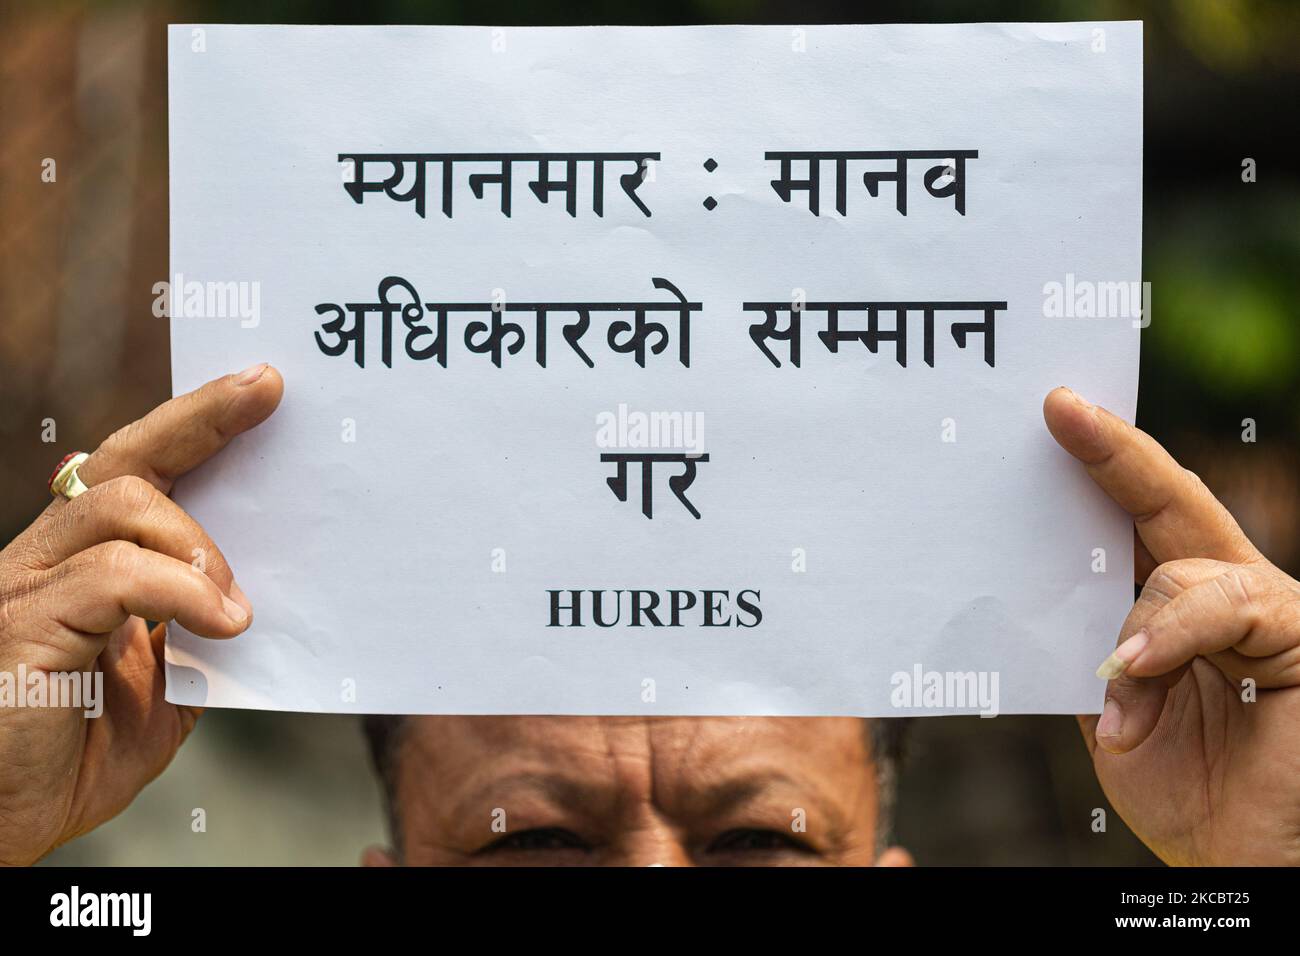 Gli attivisti della Società per i diritti umani e la Pace protestano contro il colpo di stato militare del Myanmar davanti alla Casa delle Nazioni Unite a Pulchowk, Nepal, martedì 30 marzo 2021. (Foto di Rojan Shrestha/NurPhoto) Foto Stock